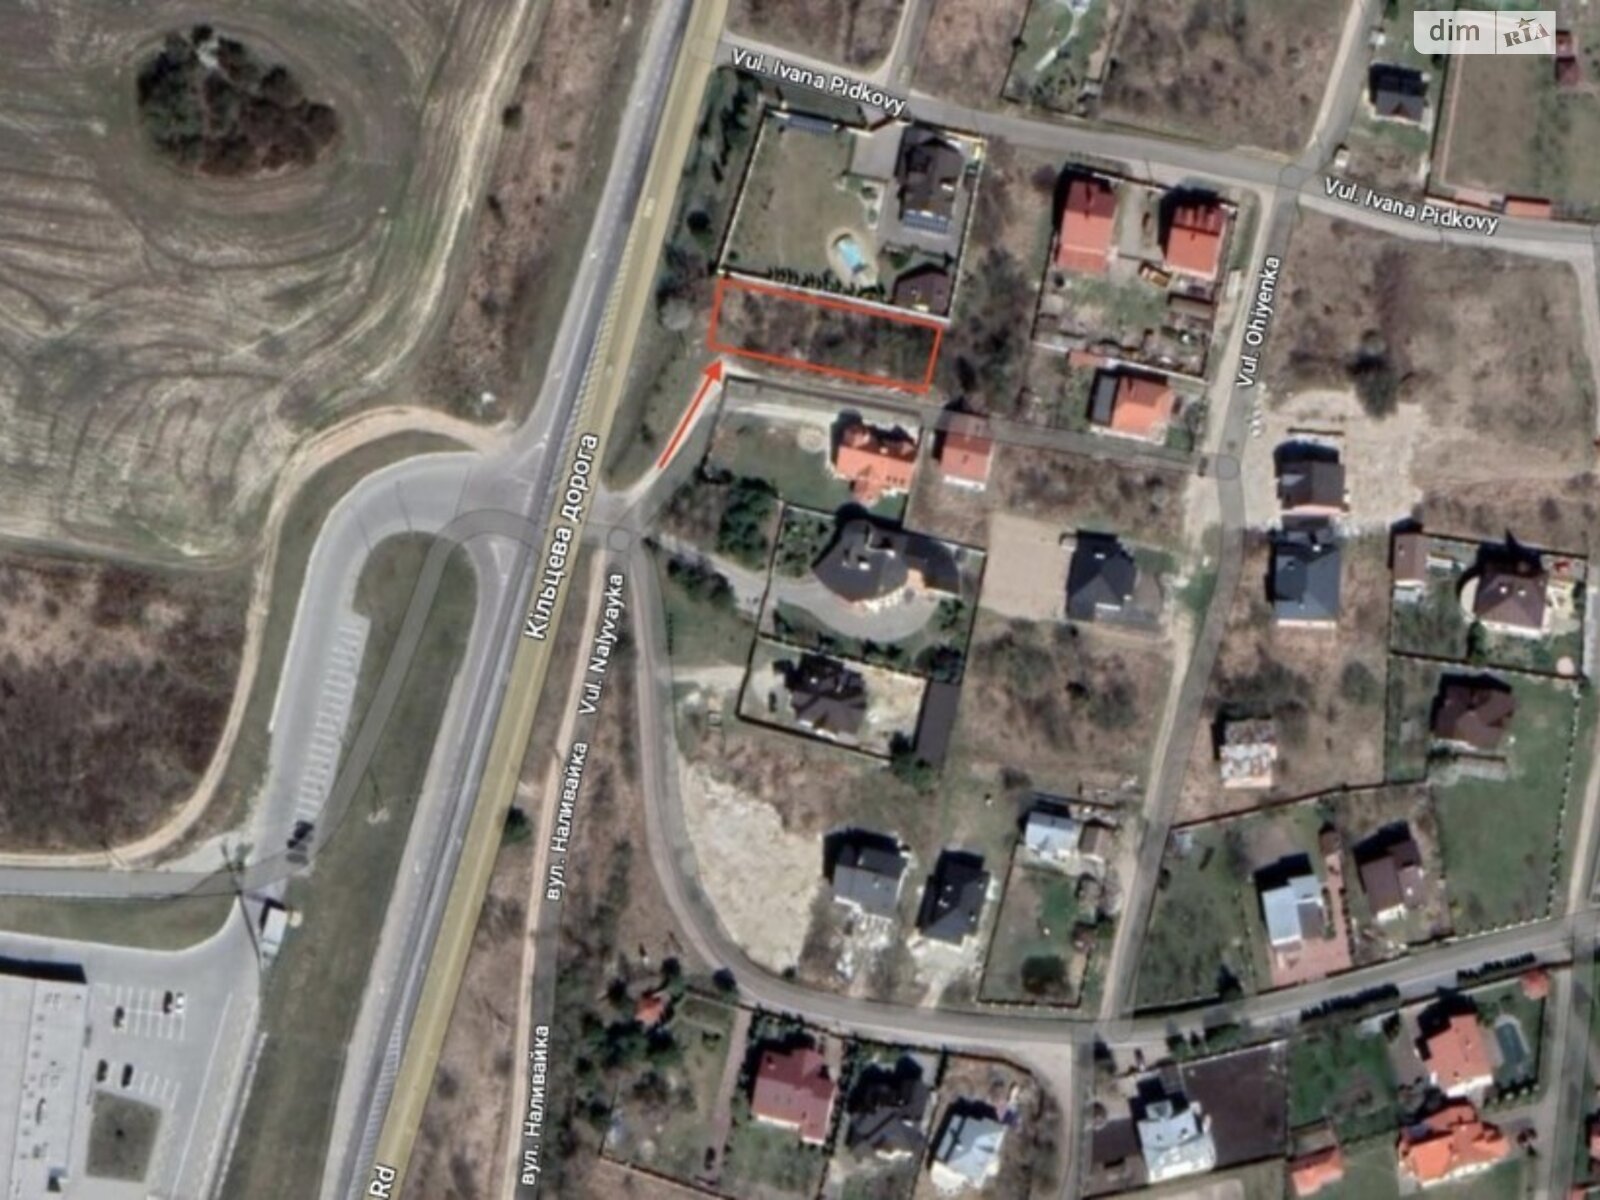 Земельный участок под жилую застройку в Рясно-Русском, площадь 8 соток фото 1